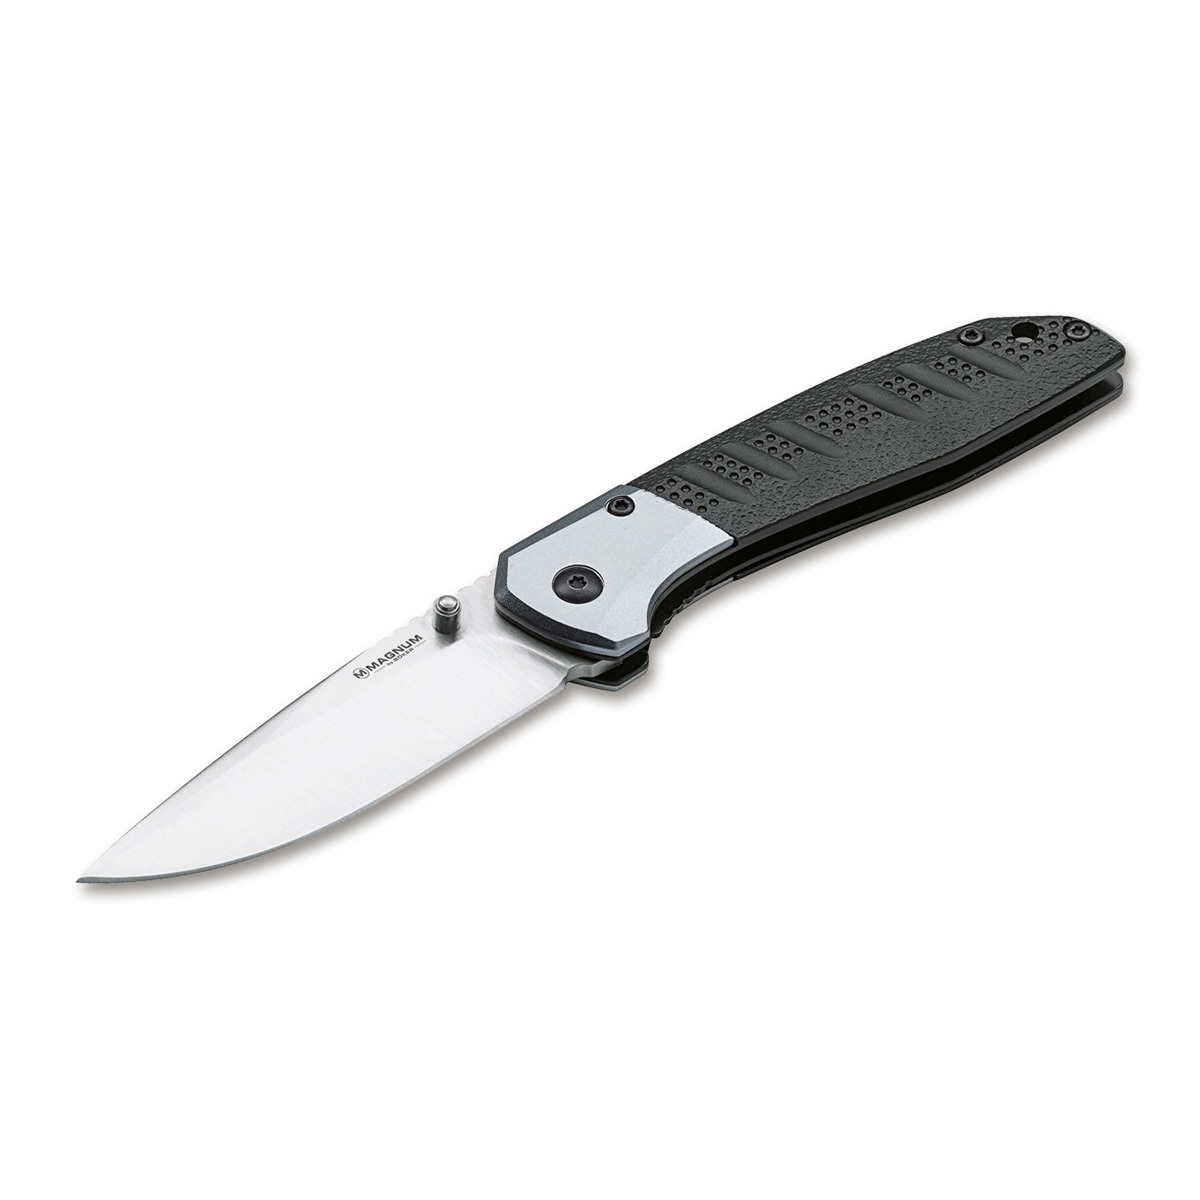 Нож складной Boker Advance pro edc, сталь 440C, рукоять алюминий нож с фиксированным клинком gerber metolius caper сталь 420hc рукоять g10